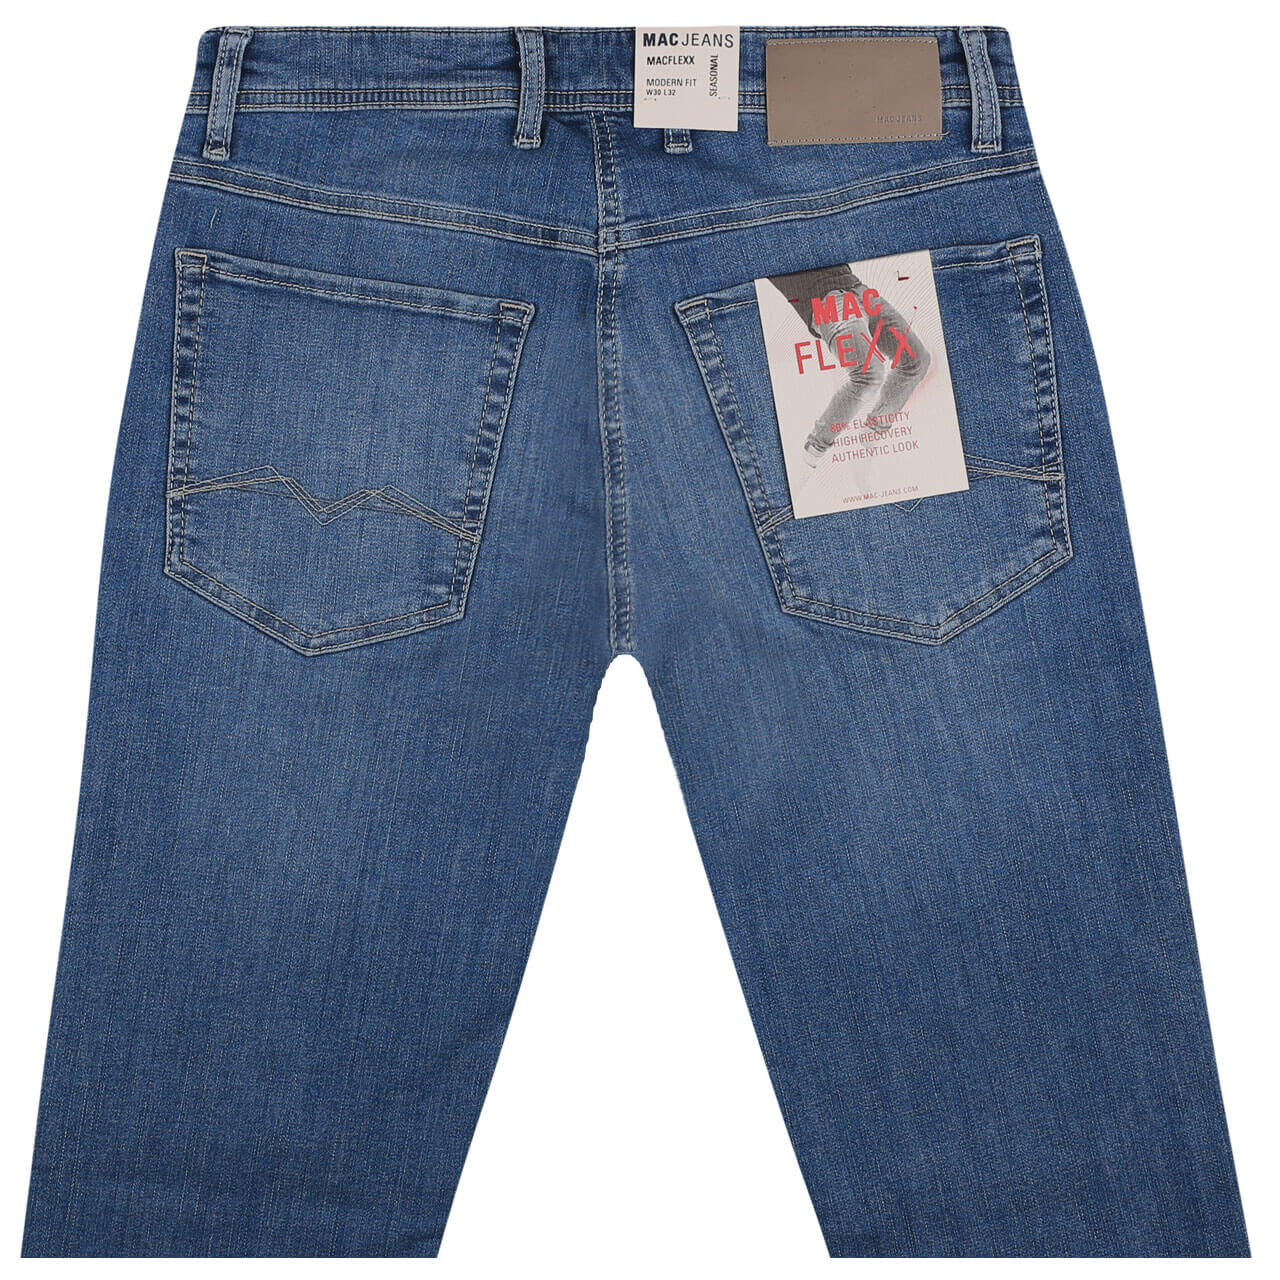 MAC Jeans Flexx für Herren in Hellblau verwaschen, FarbNr.: H447